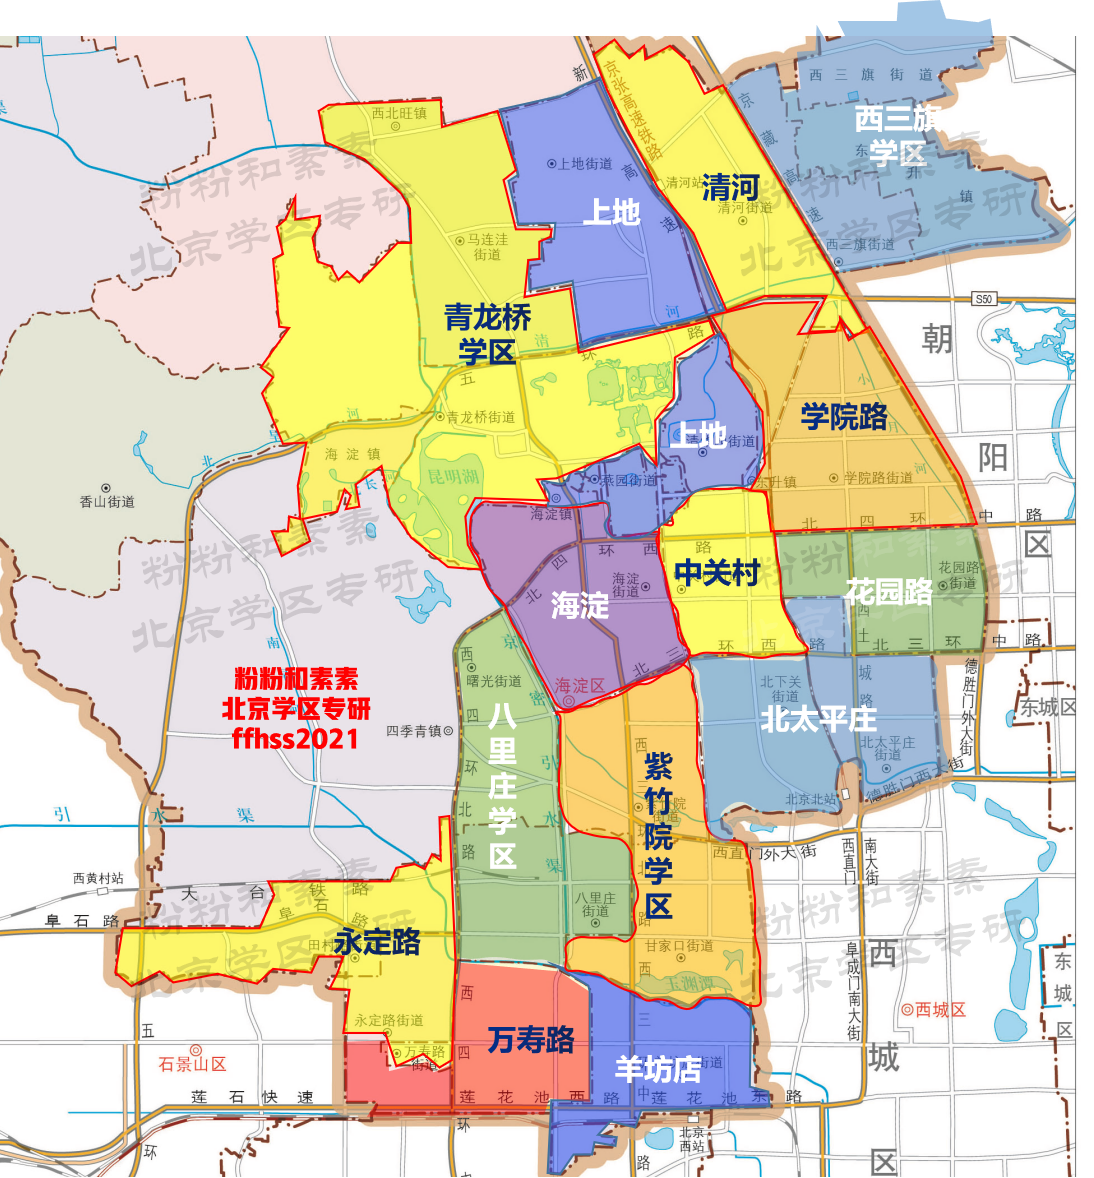 北京海淀学区划分,街道地图 学区划分